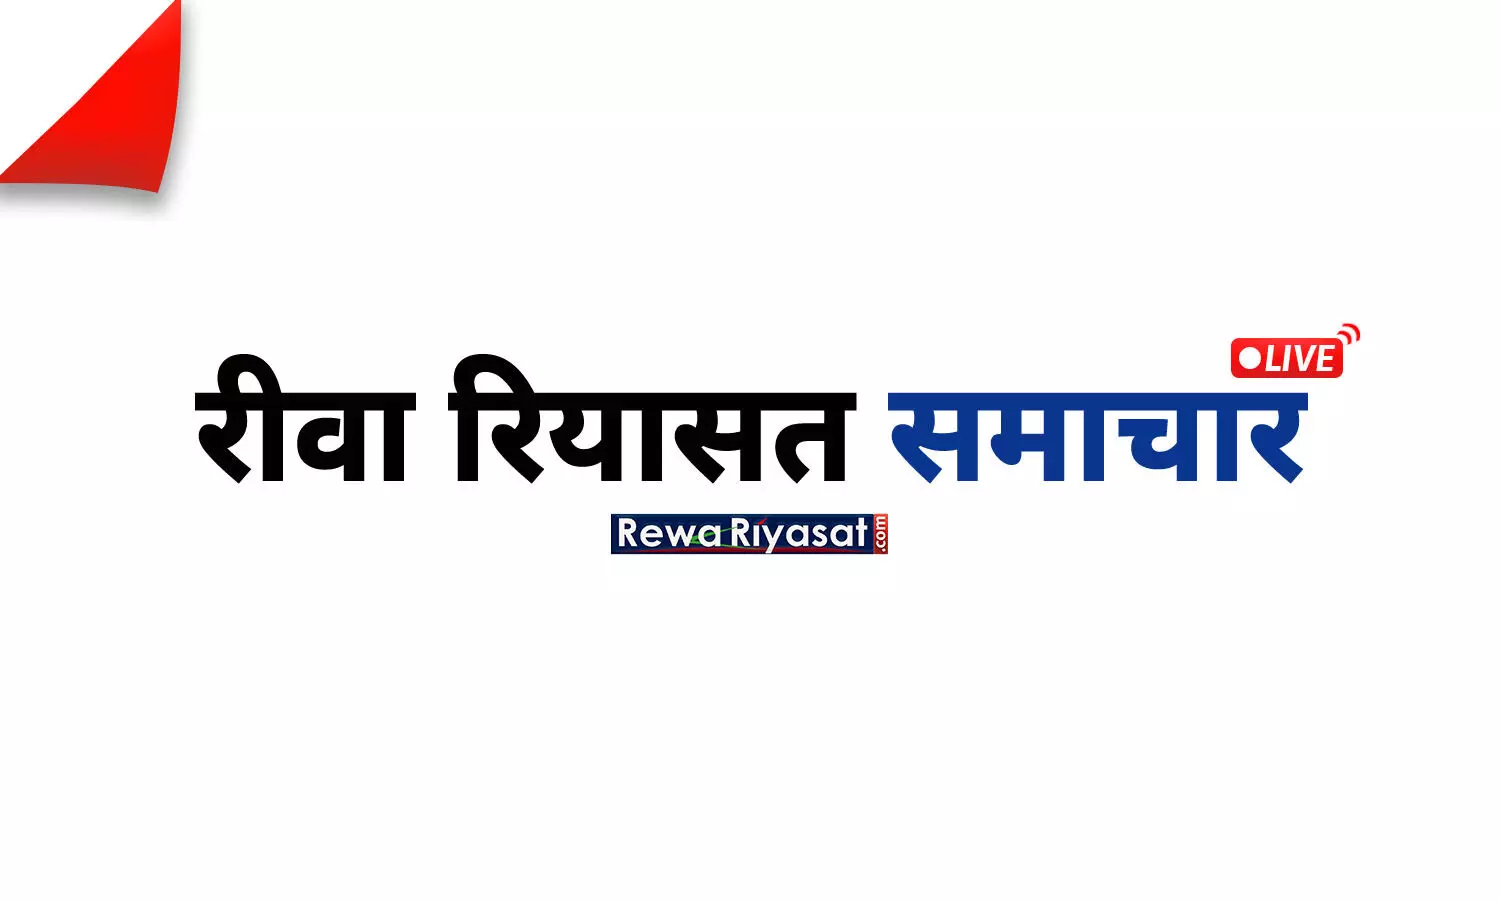 Breaking News in Hindi: लाइव ब्रेकिंग न्यूज़, पढ़ें शुक्रवार 24 मार्च के मुख्य और ताजा समाचार